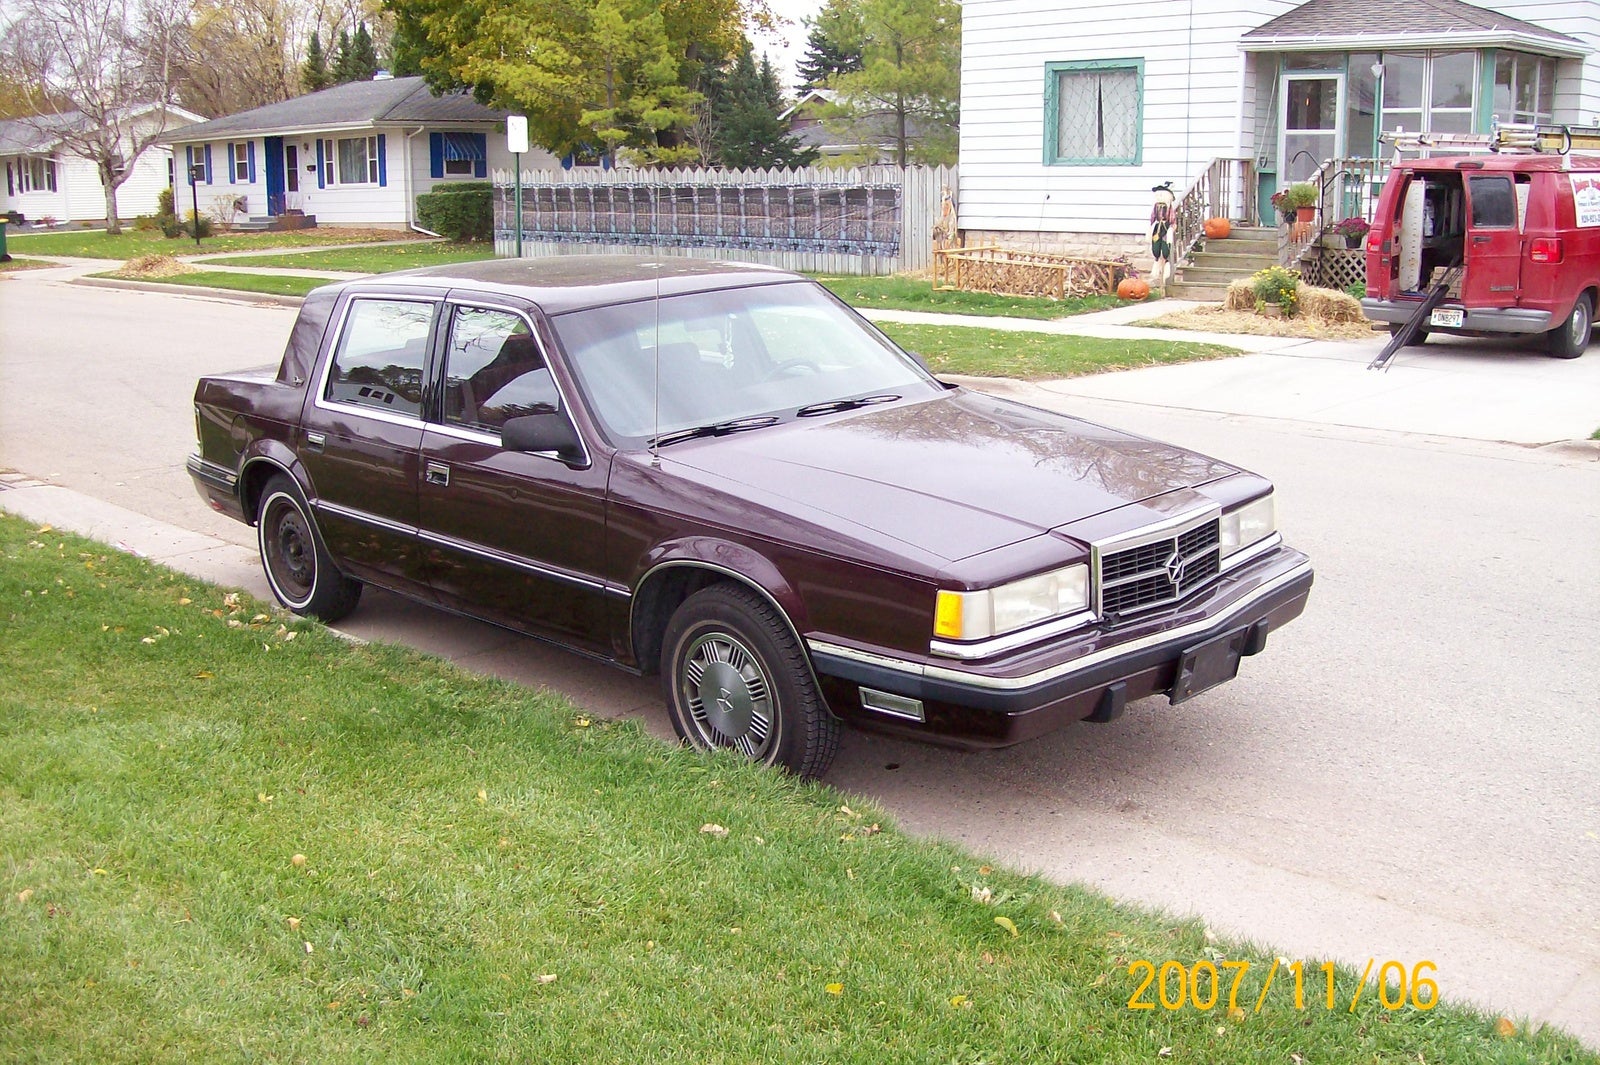 1988 Dodge Dynasty - Pictures - 1988 Dodge Dynasty picture - CarGurus